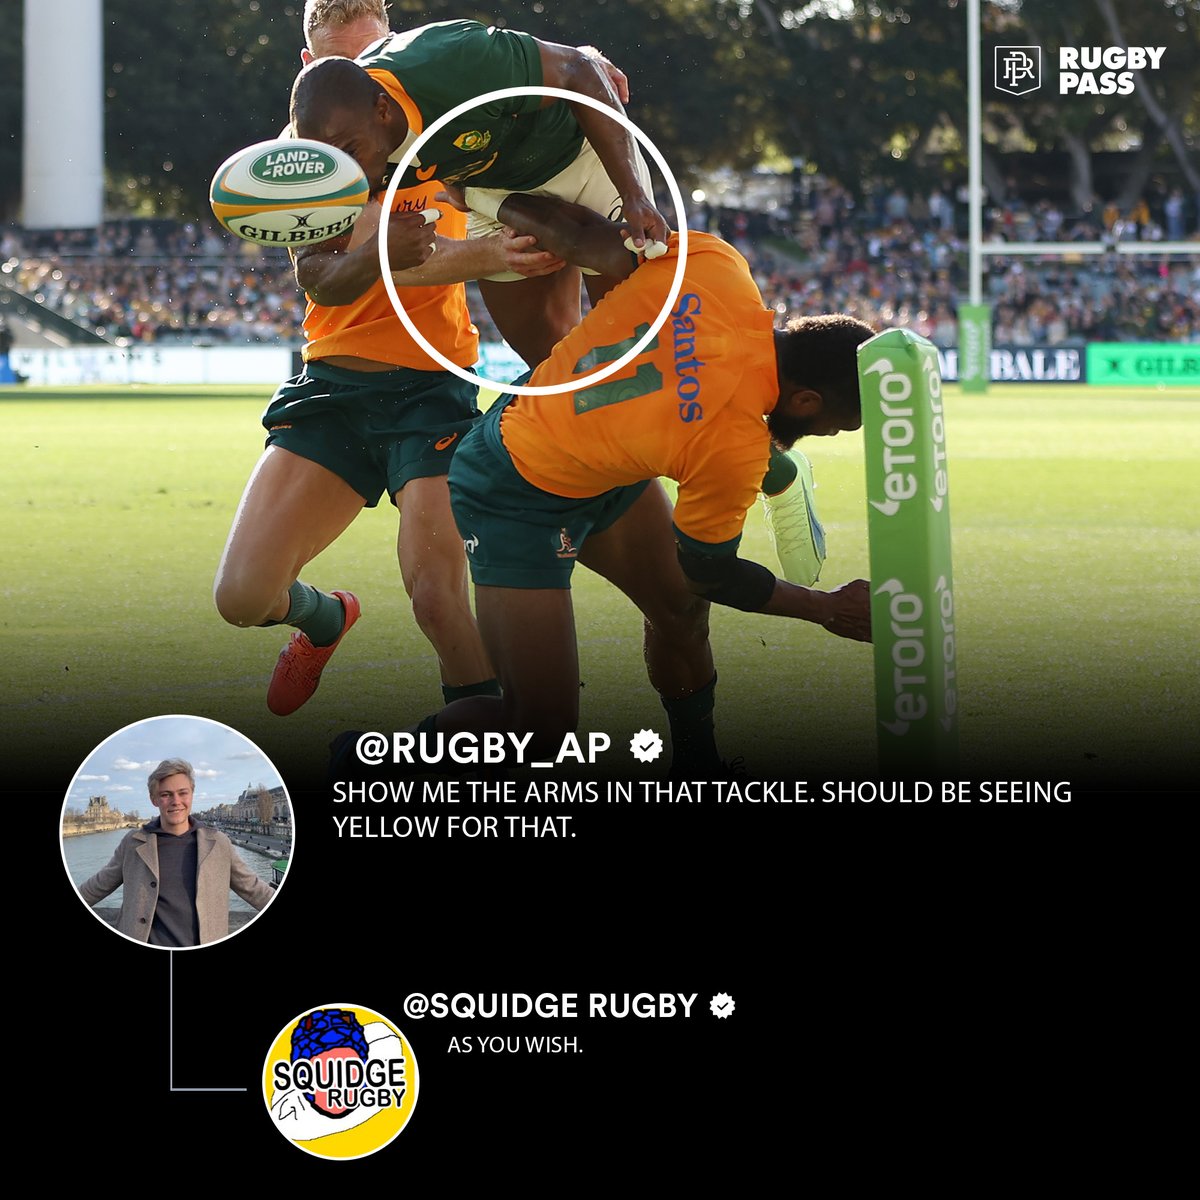 RugbyPass